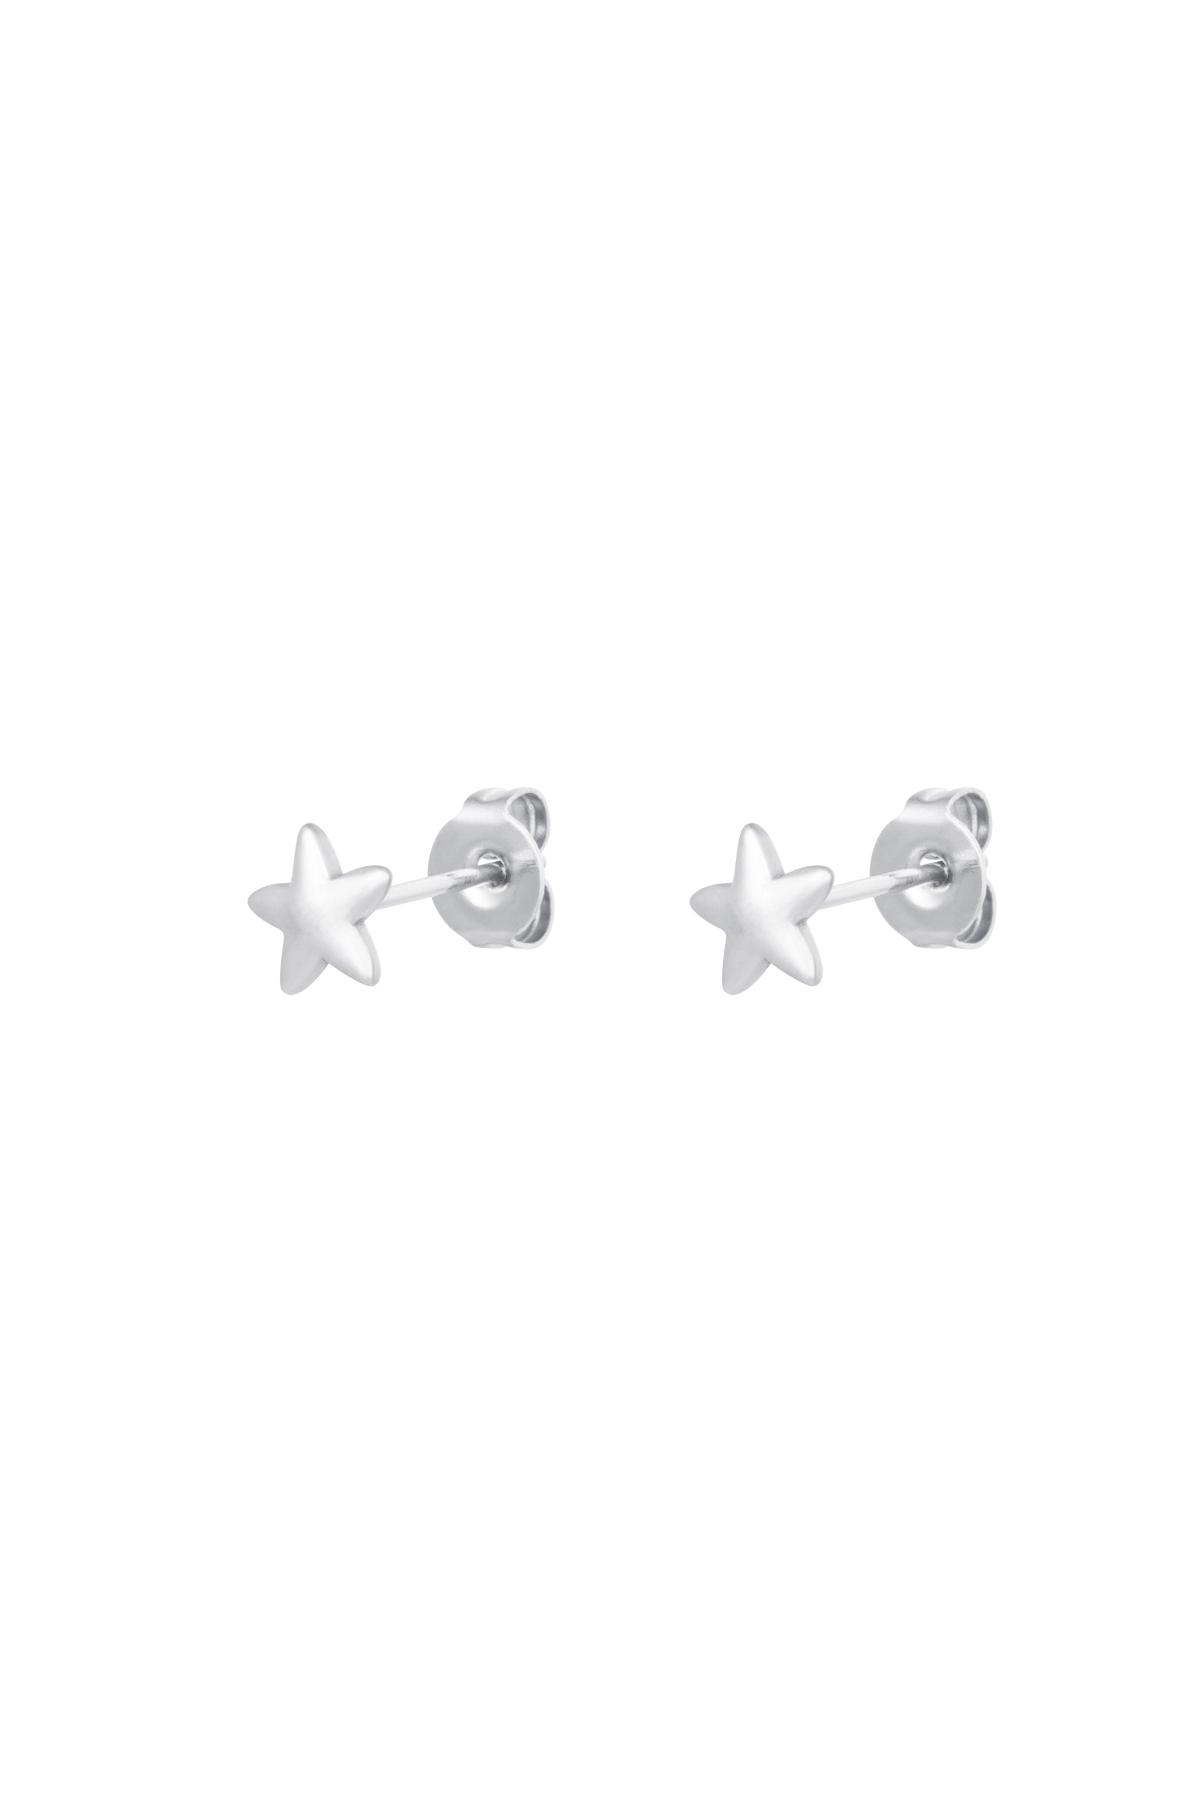 Stud Earrings Star Silver Stainless Steel h5 